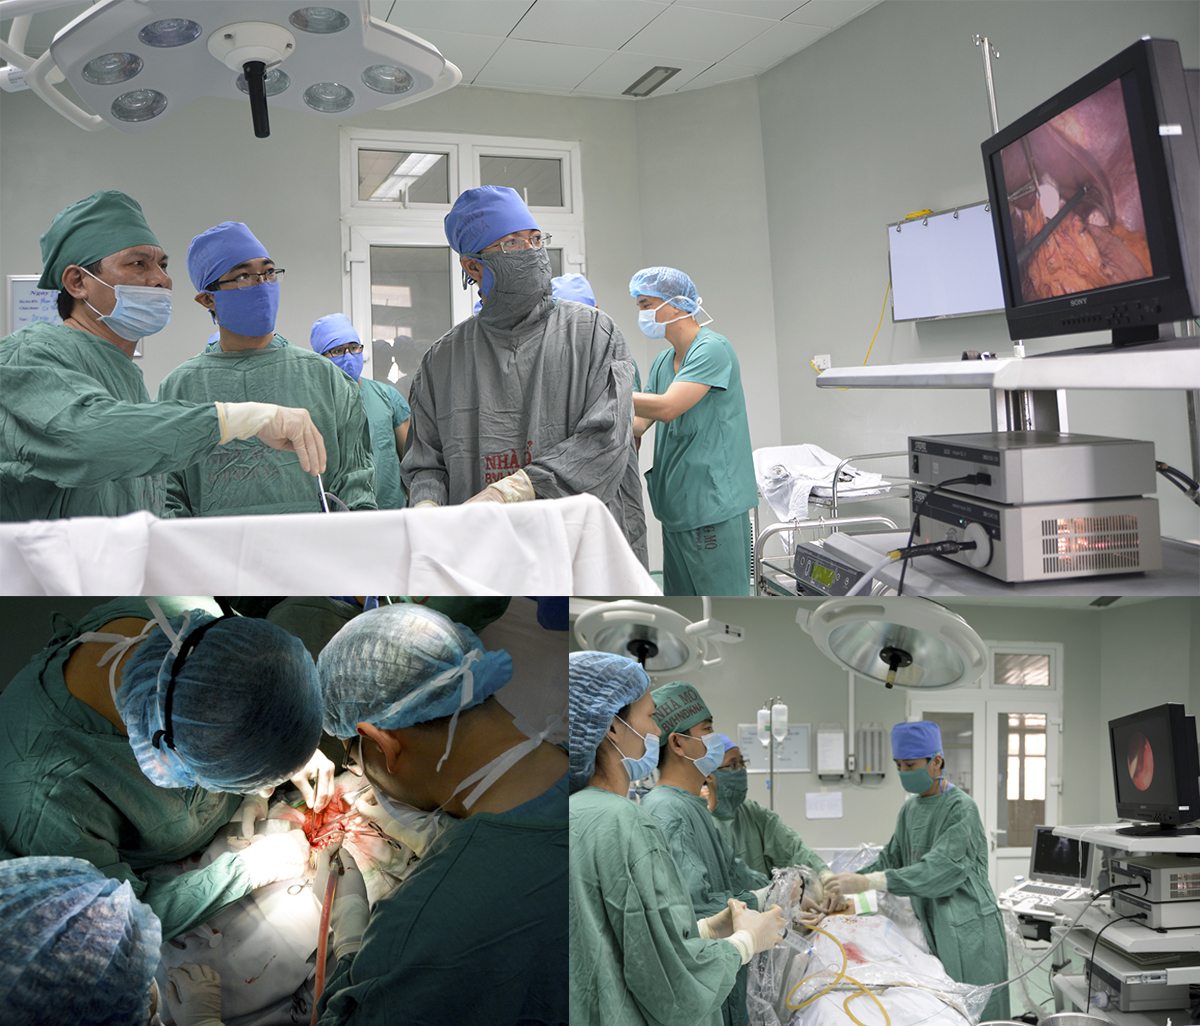 Phẫu thuật nội soi thực quản; Thực hiện phương pháp phẫu thuật mạch máu; Kỹ thuật tán sỏi thận ngoài cơ thể.